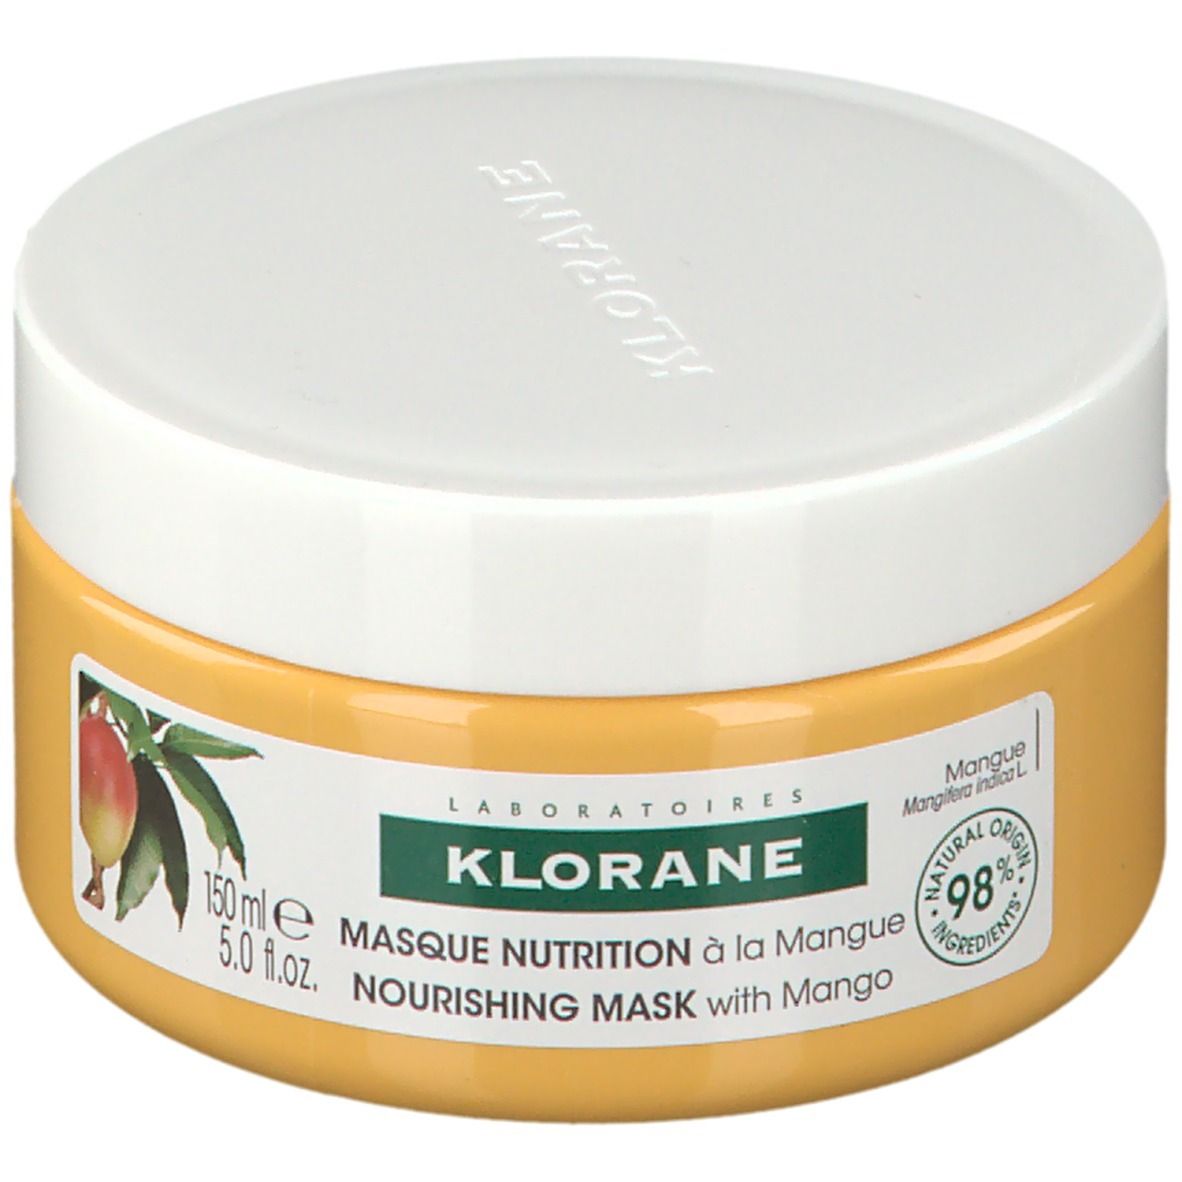 Klorane Masque Nutrition à la Mangue